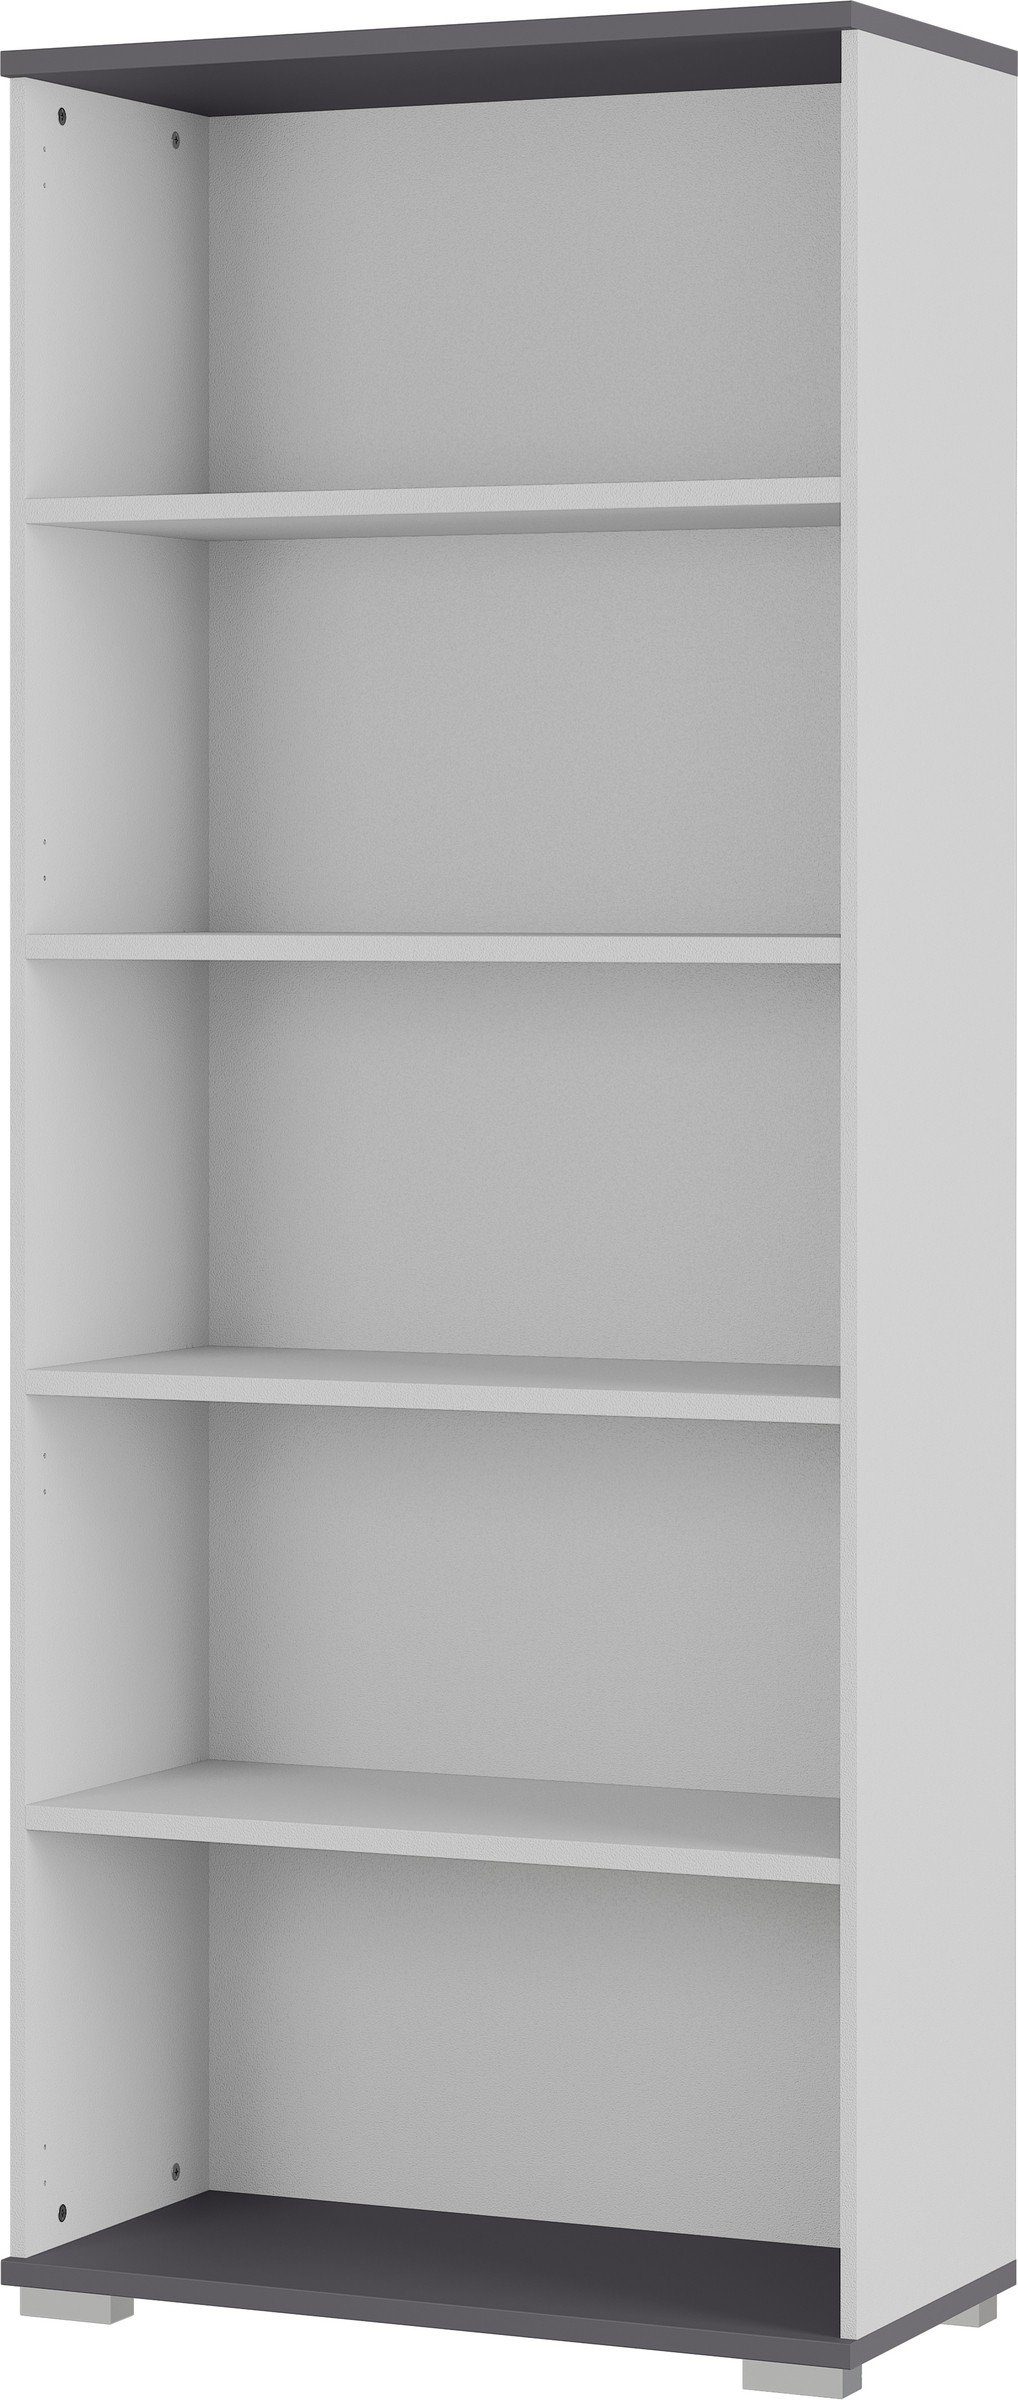 möbelando Bücherregal 416, BxHxT: 80x200x40 cm, in grau, anthrazit mit 4 Einlegeböden | Bücherschränke